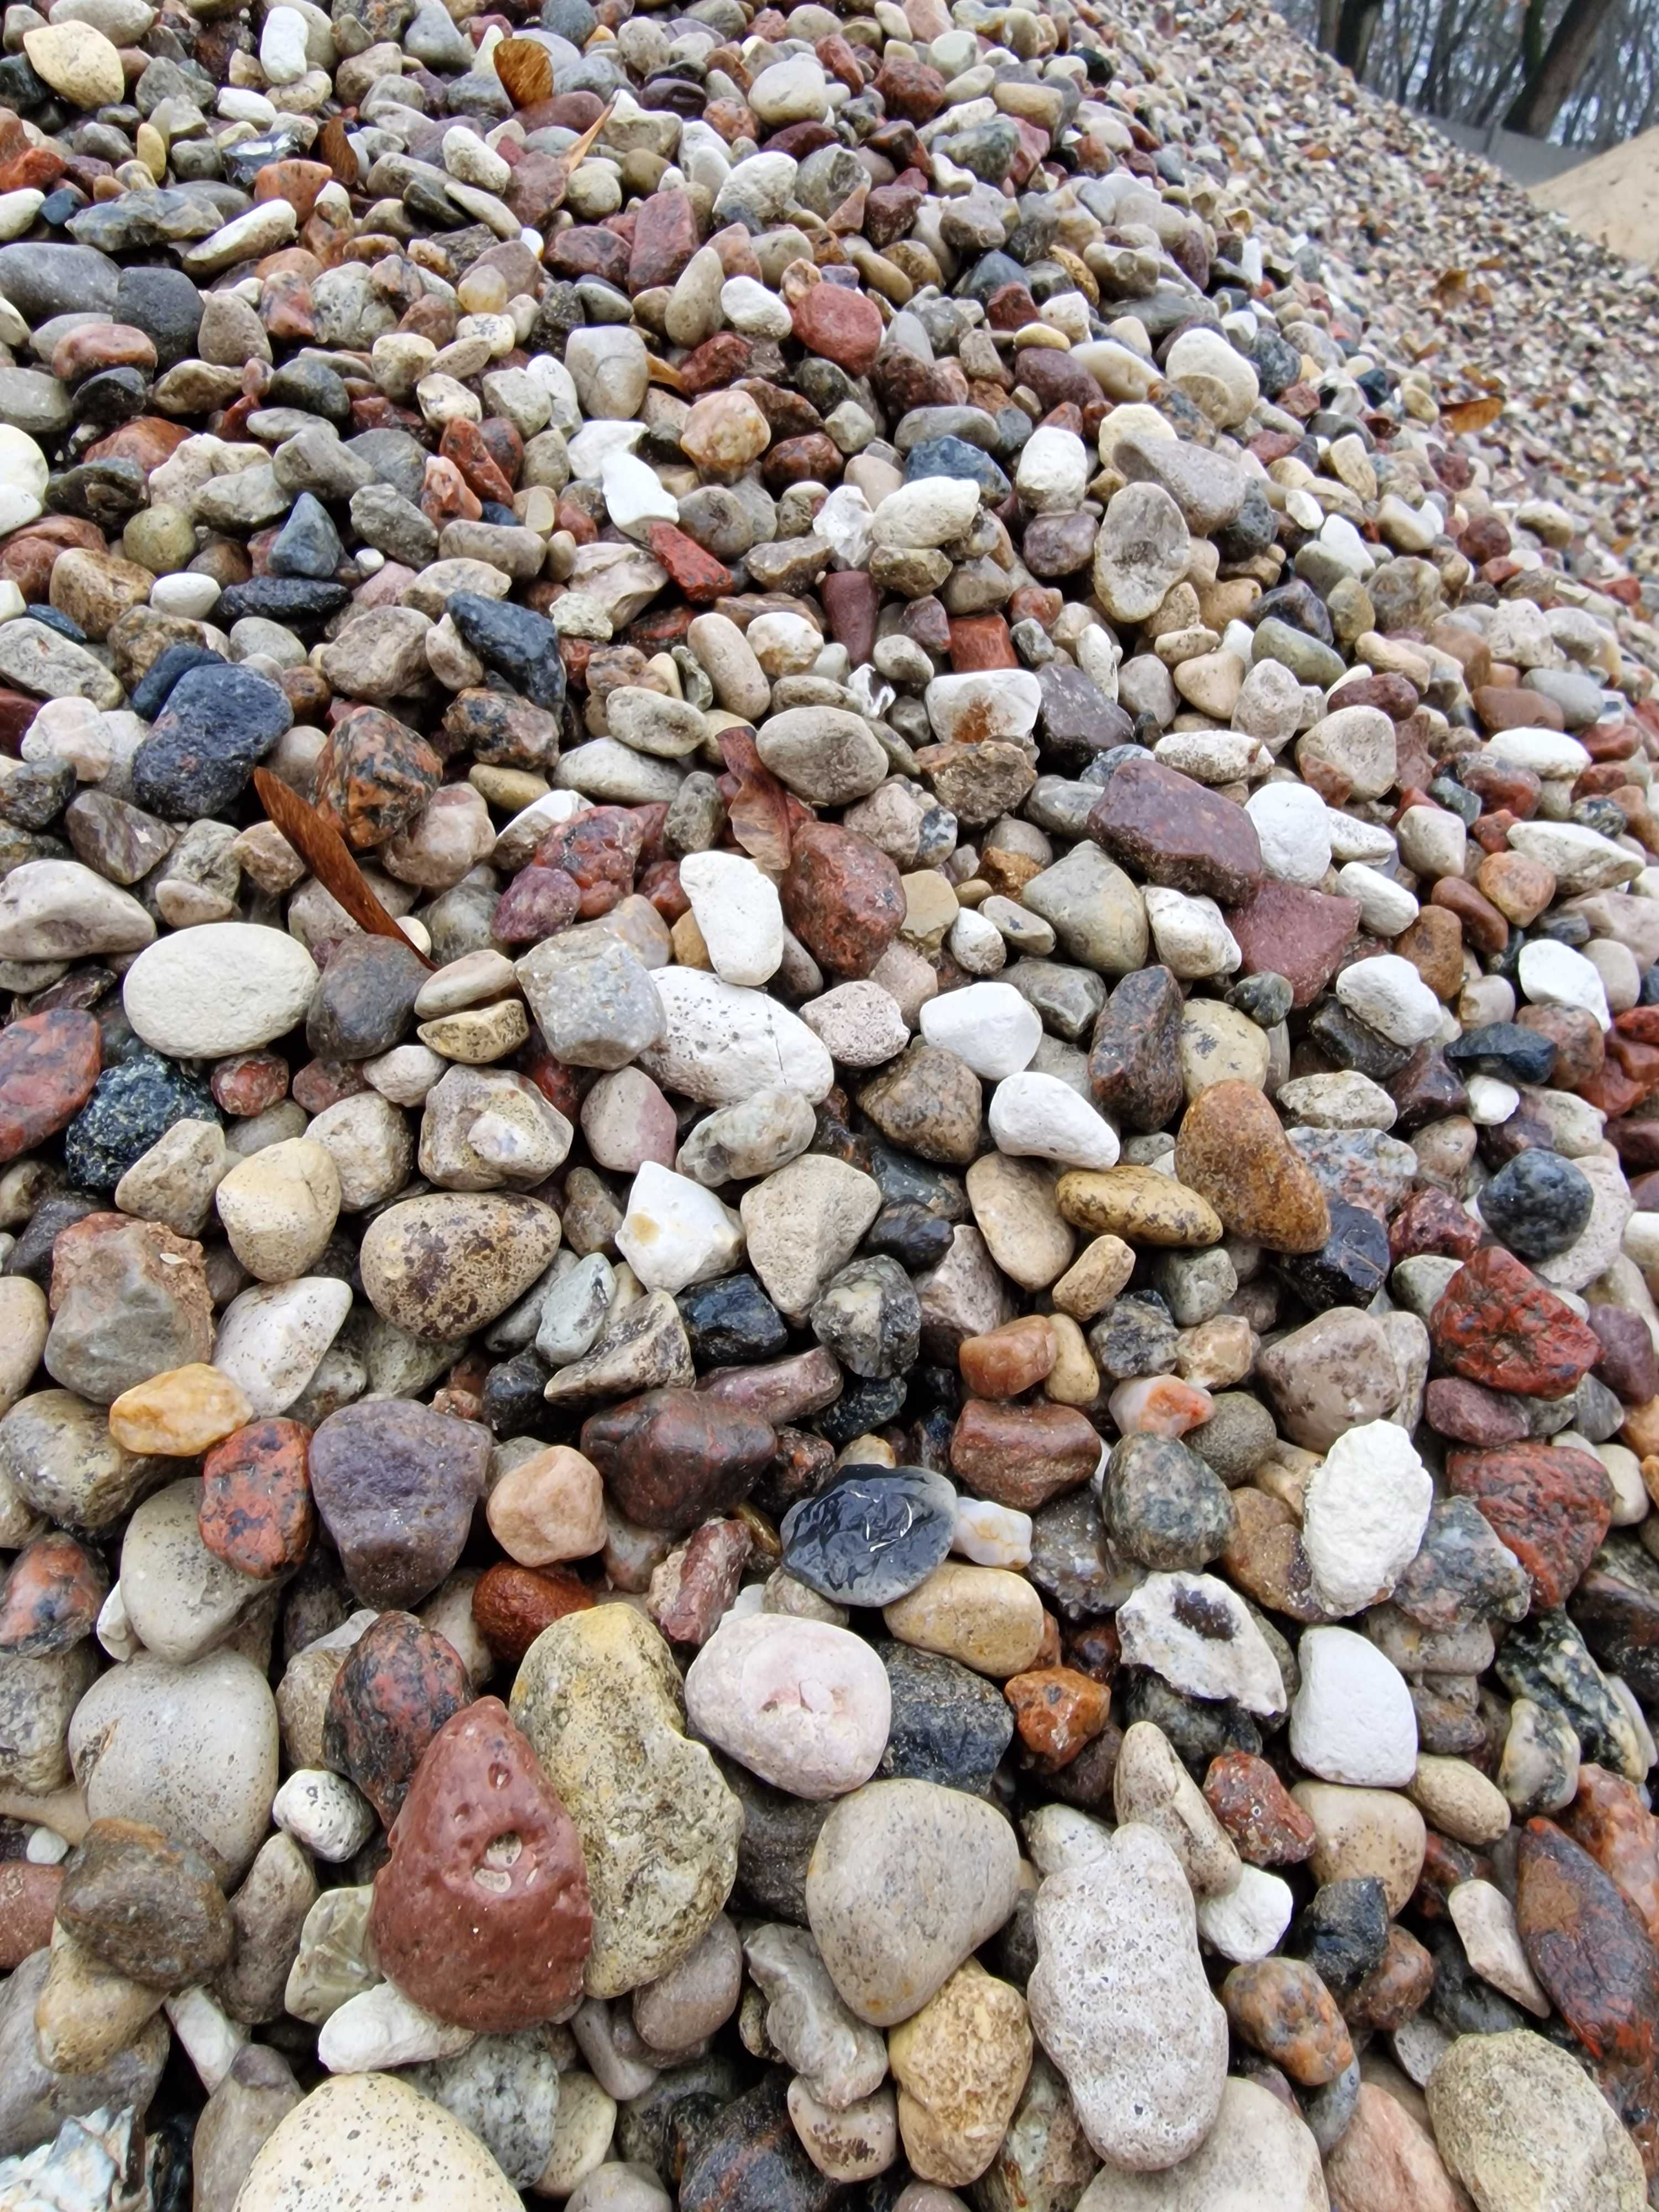 Żwir płukany 2-8, 8-16, 8-32, 16-32 otoczaki kamień drenaż